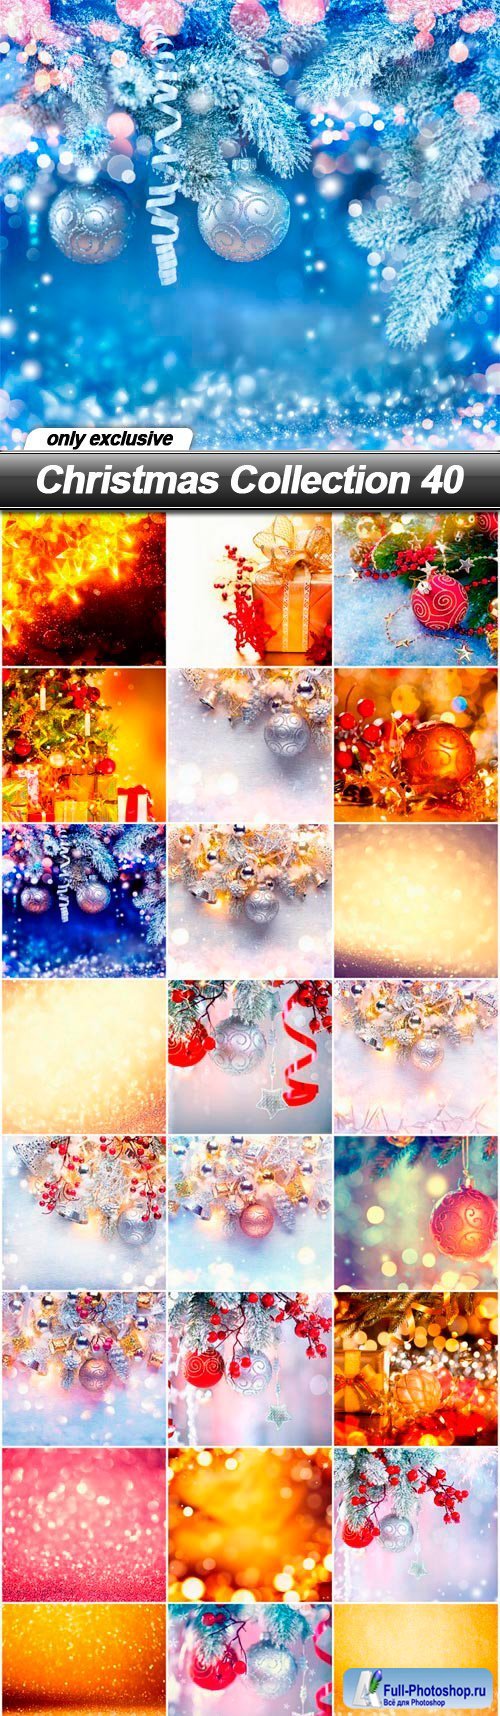 Christmas Collection 40 - 25 UHQ JPEG